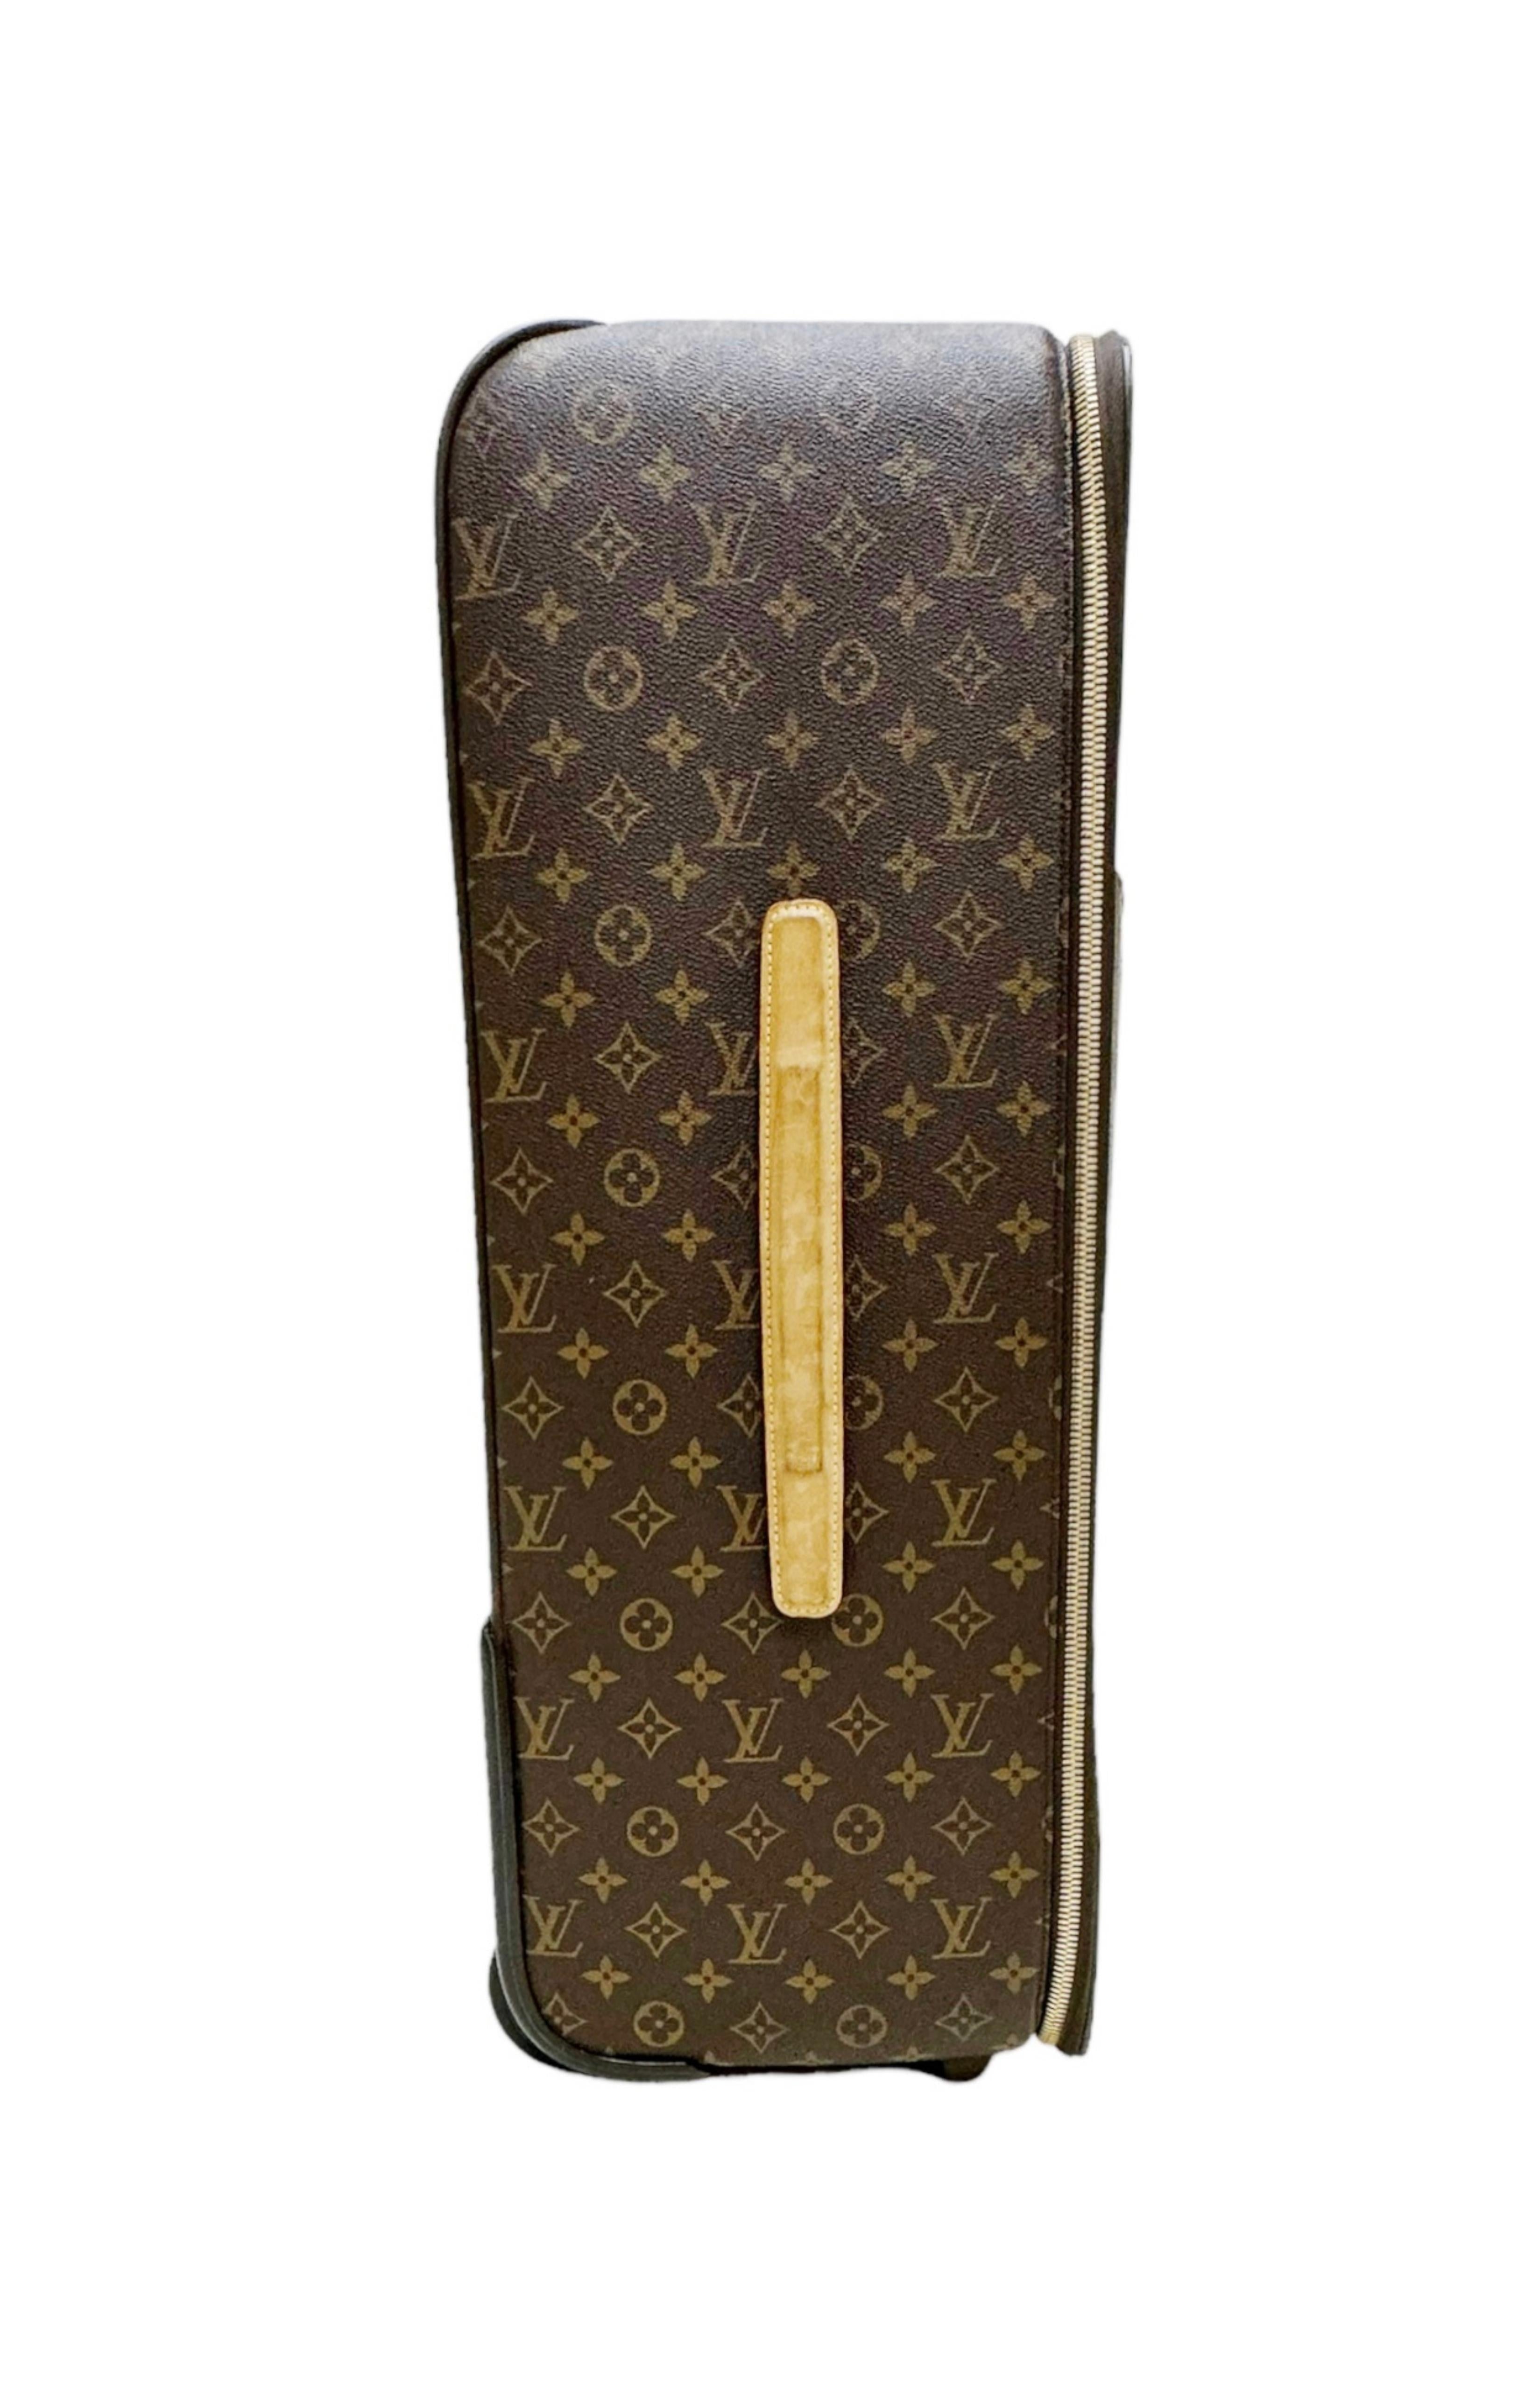 LOUIS VUITTON Luggage & Sleeve Set Size: 17.5 x 9.25 x 25.5